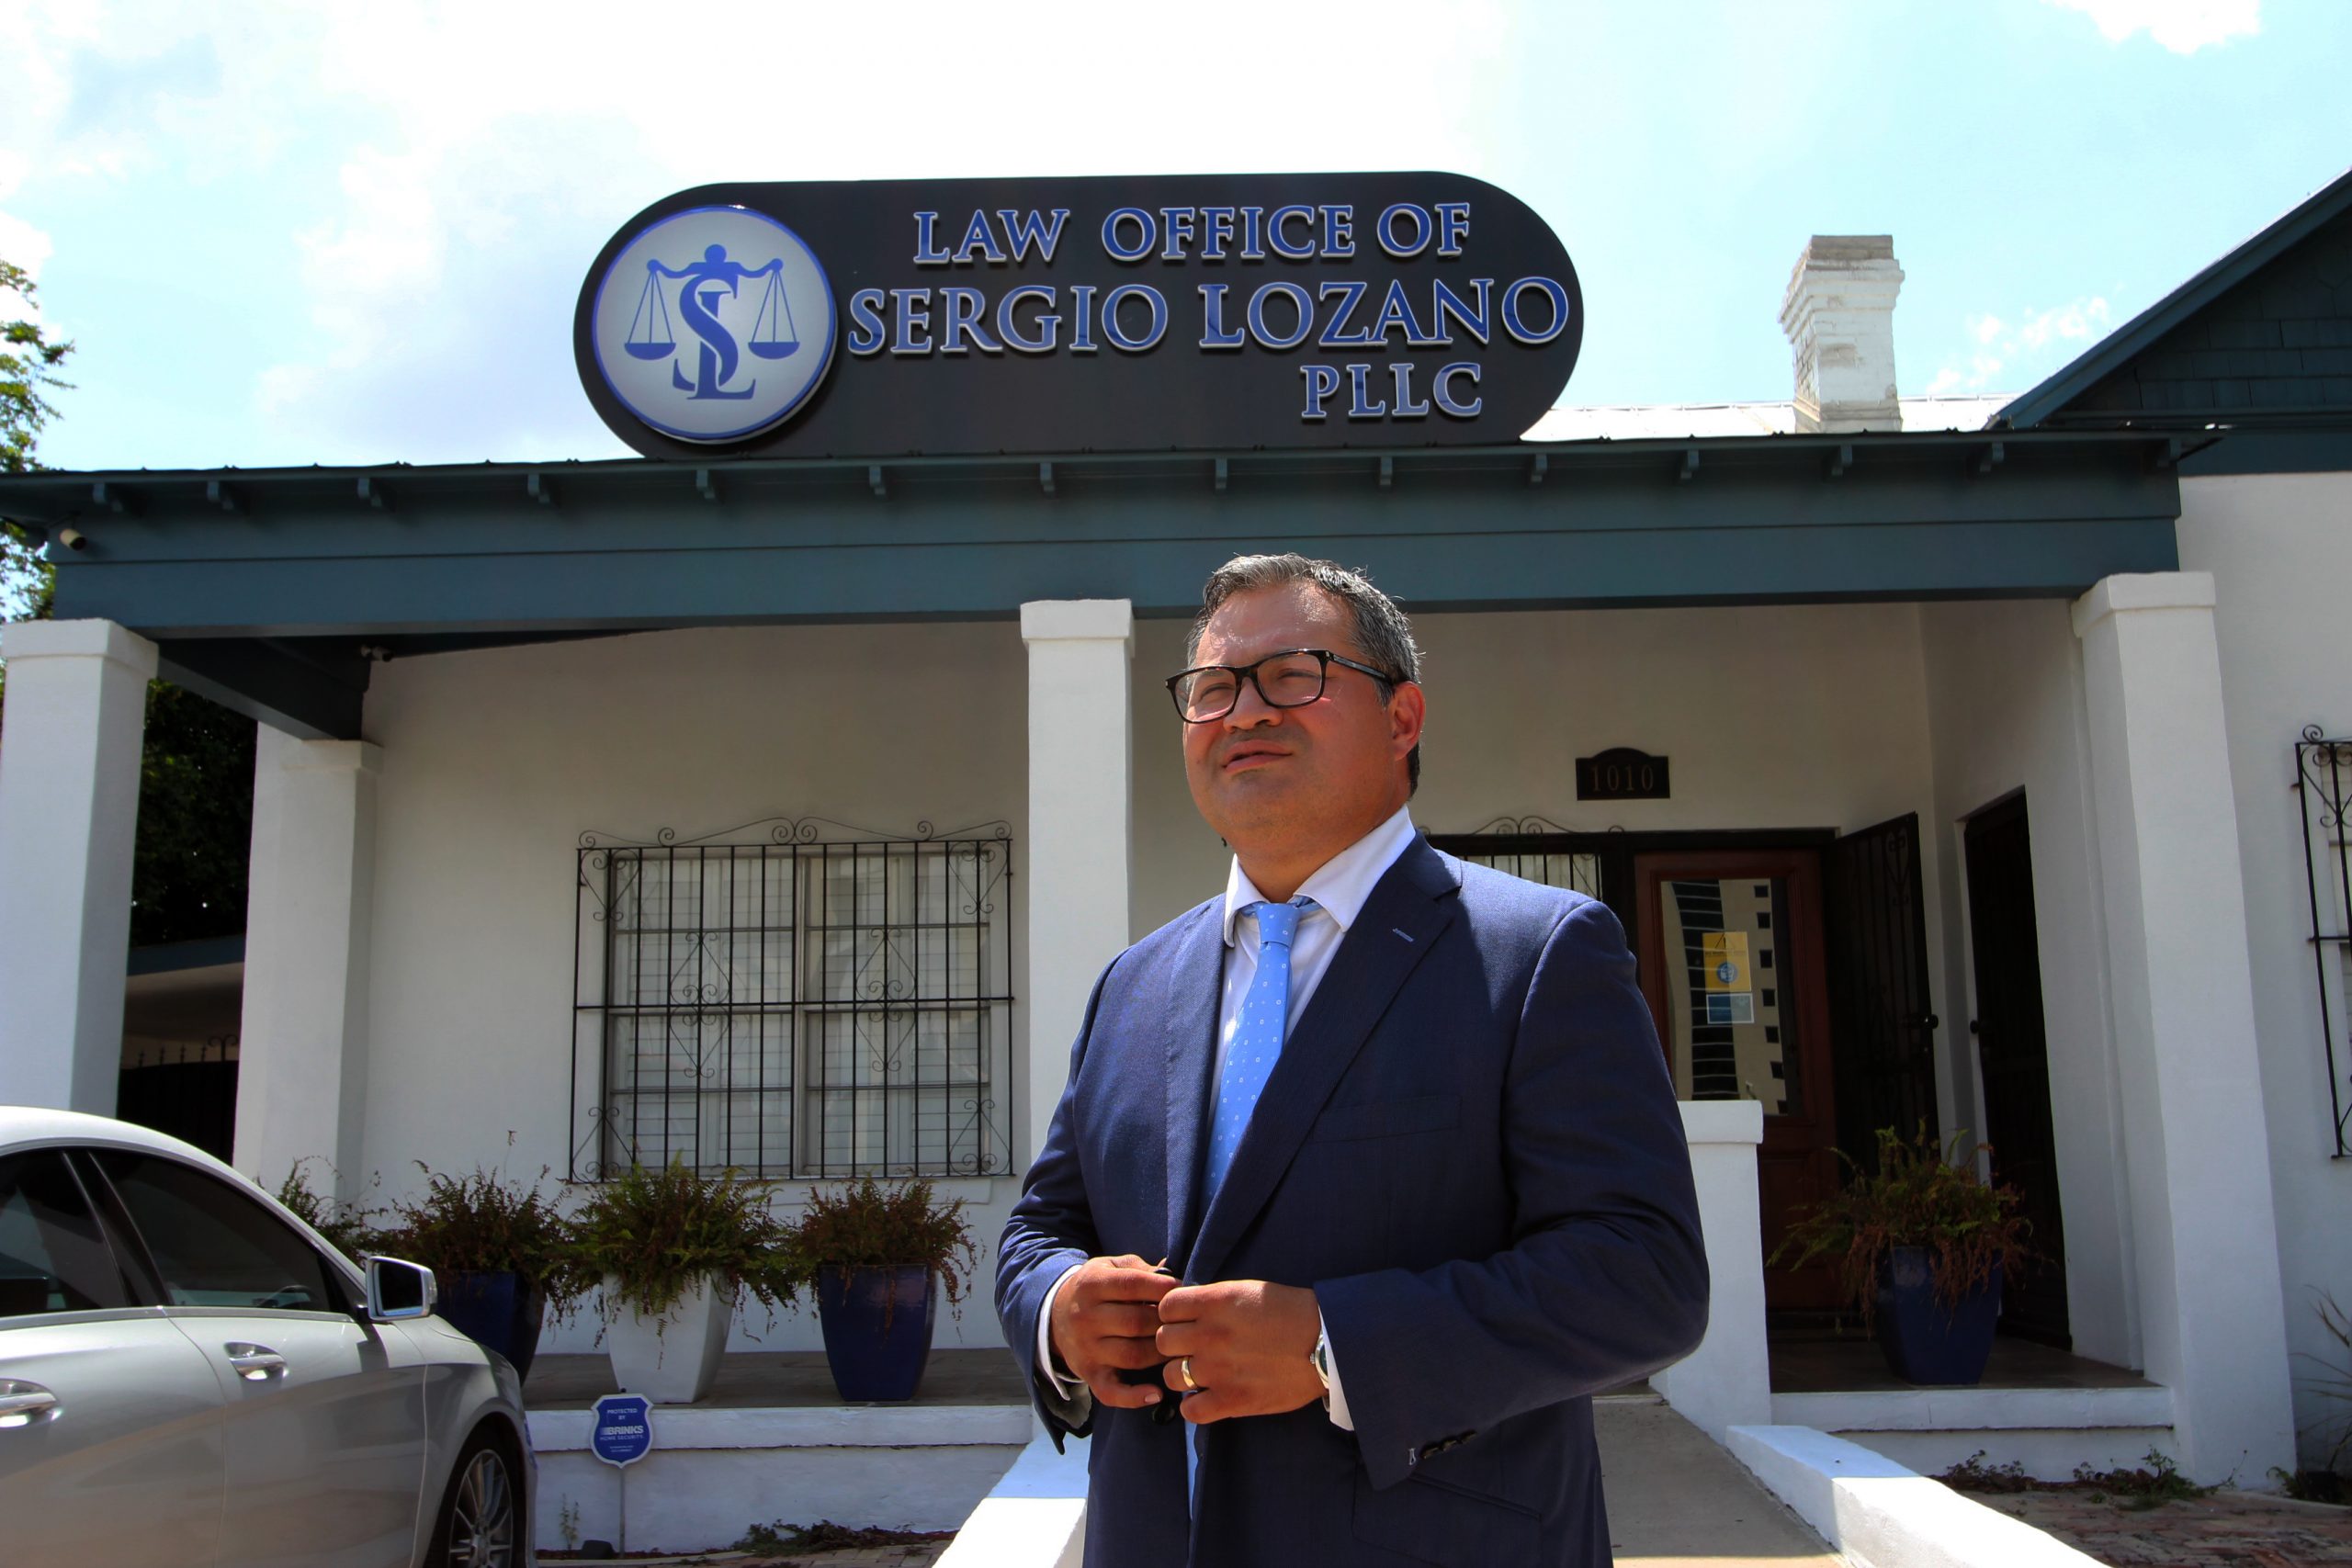 Sergio Lozano